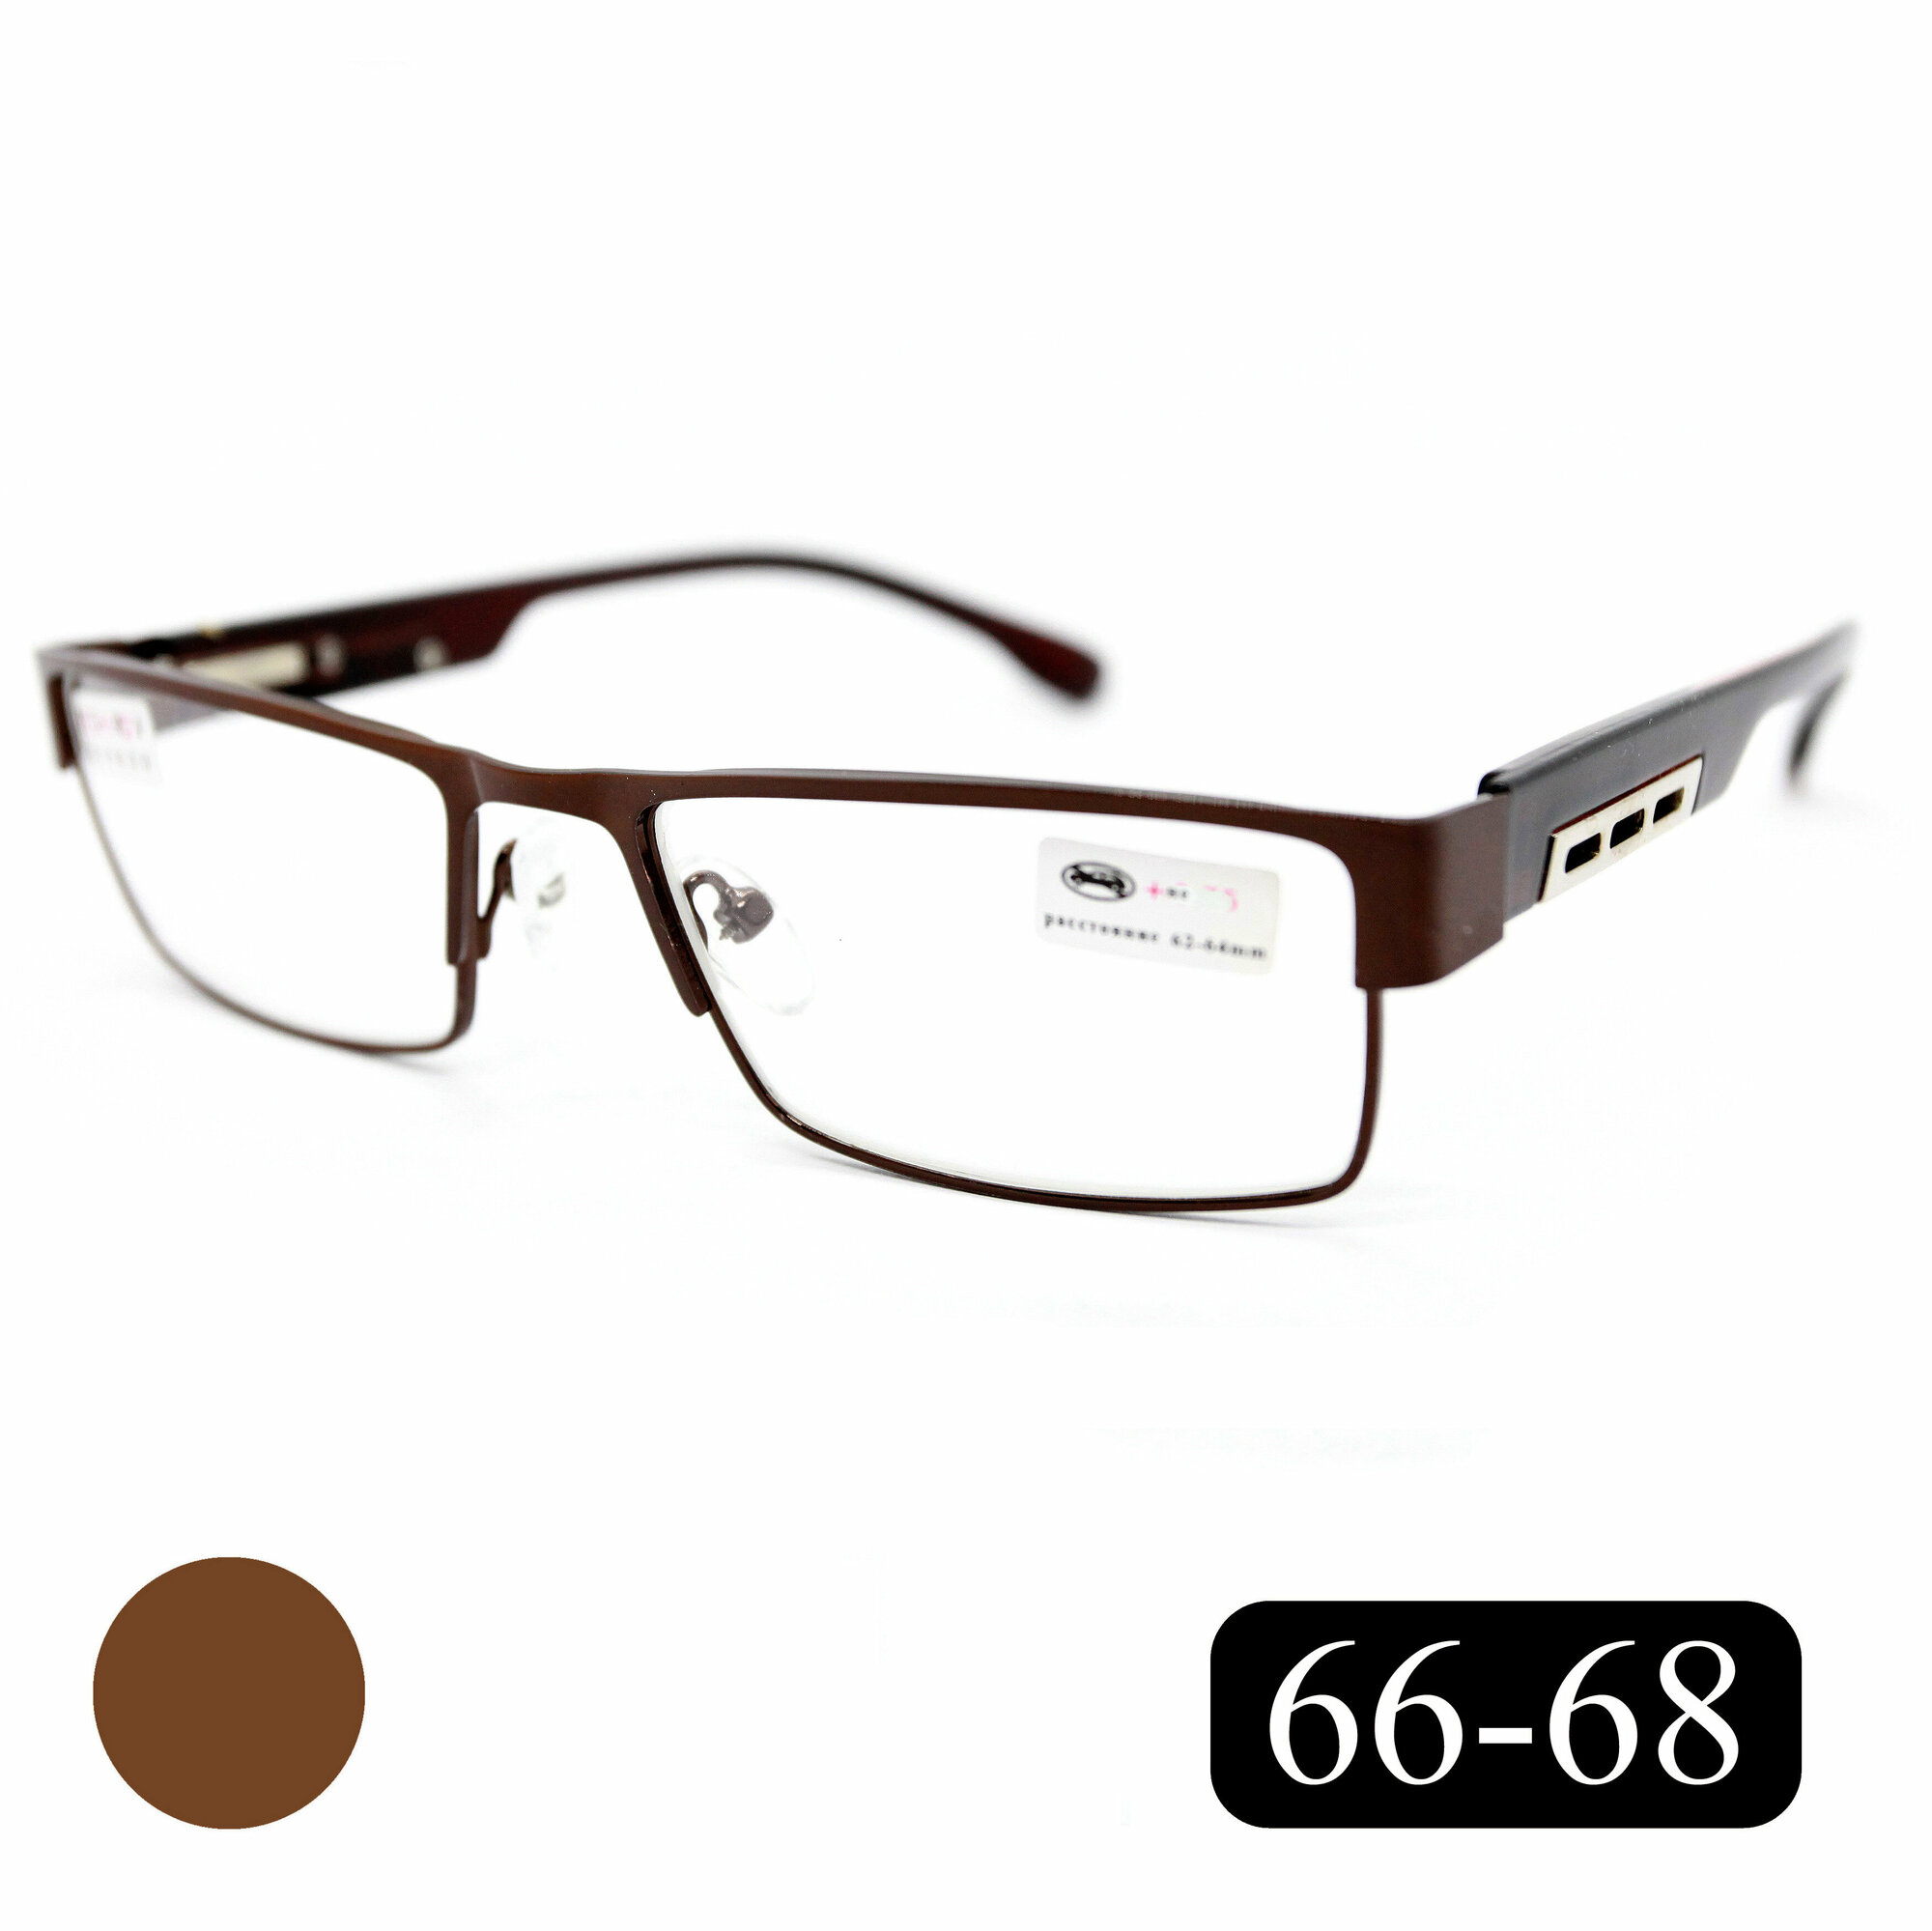 Готовые очки РЦ 66-68 для зрения-чтения (+2.50) мост 019-M1 без футляра цвет коричневый линзы пластик РЦ 66-68